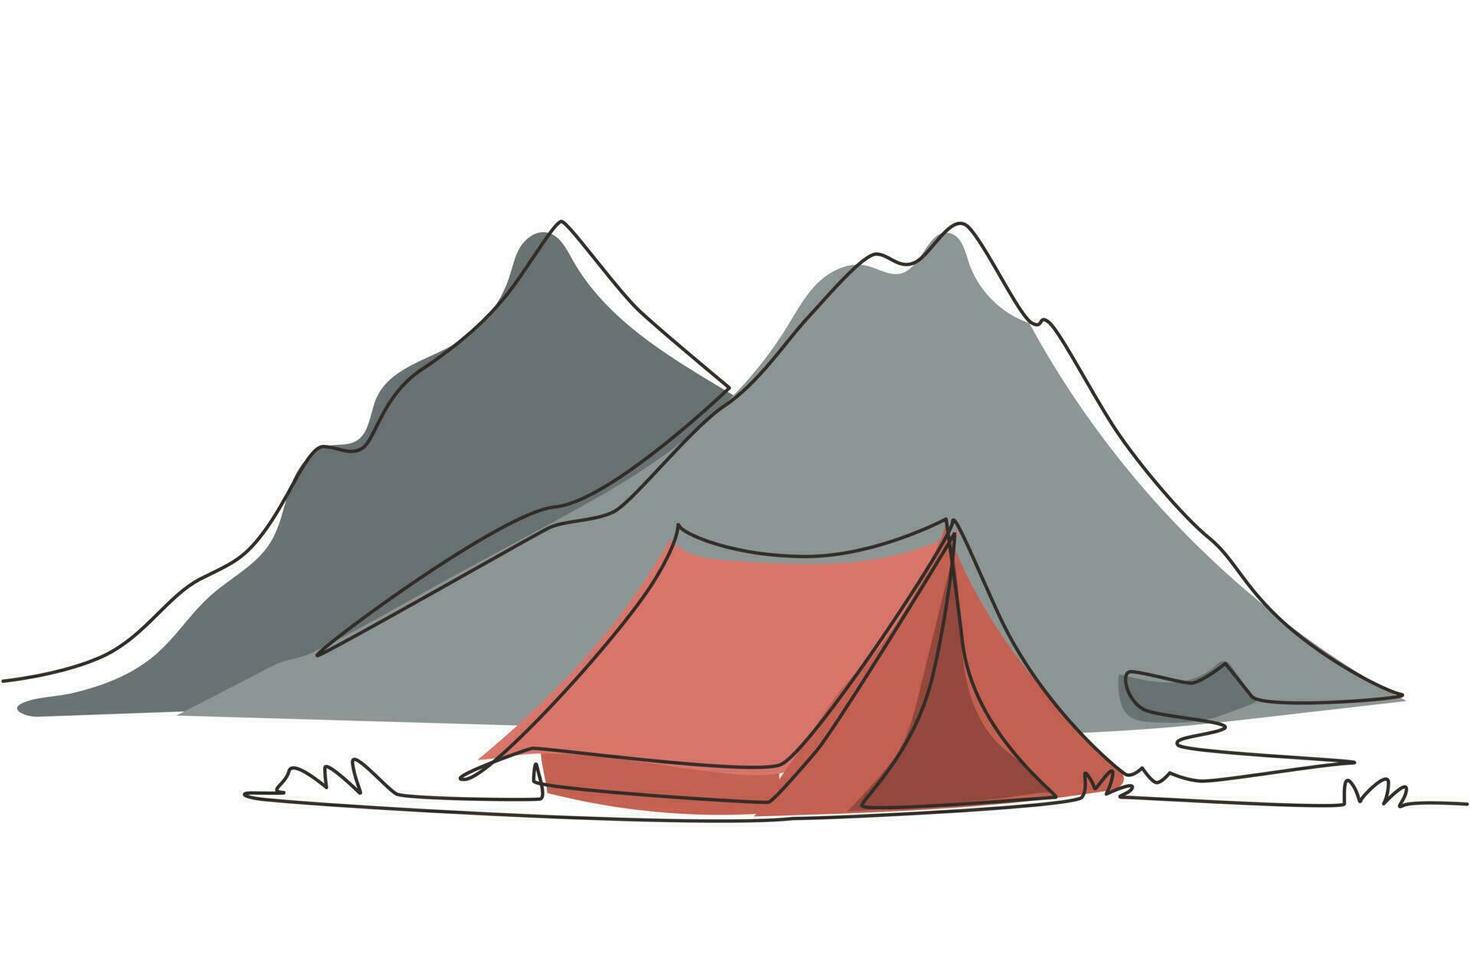 enkele lijntekening avontuur camping nacht landschap. tent, camping, dennenbos en rotsbergen. sport, wandelen, kamperen, openluchtrecreatie. doorlopende lijn tekenen ontwerp vectorillustratie vector